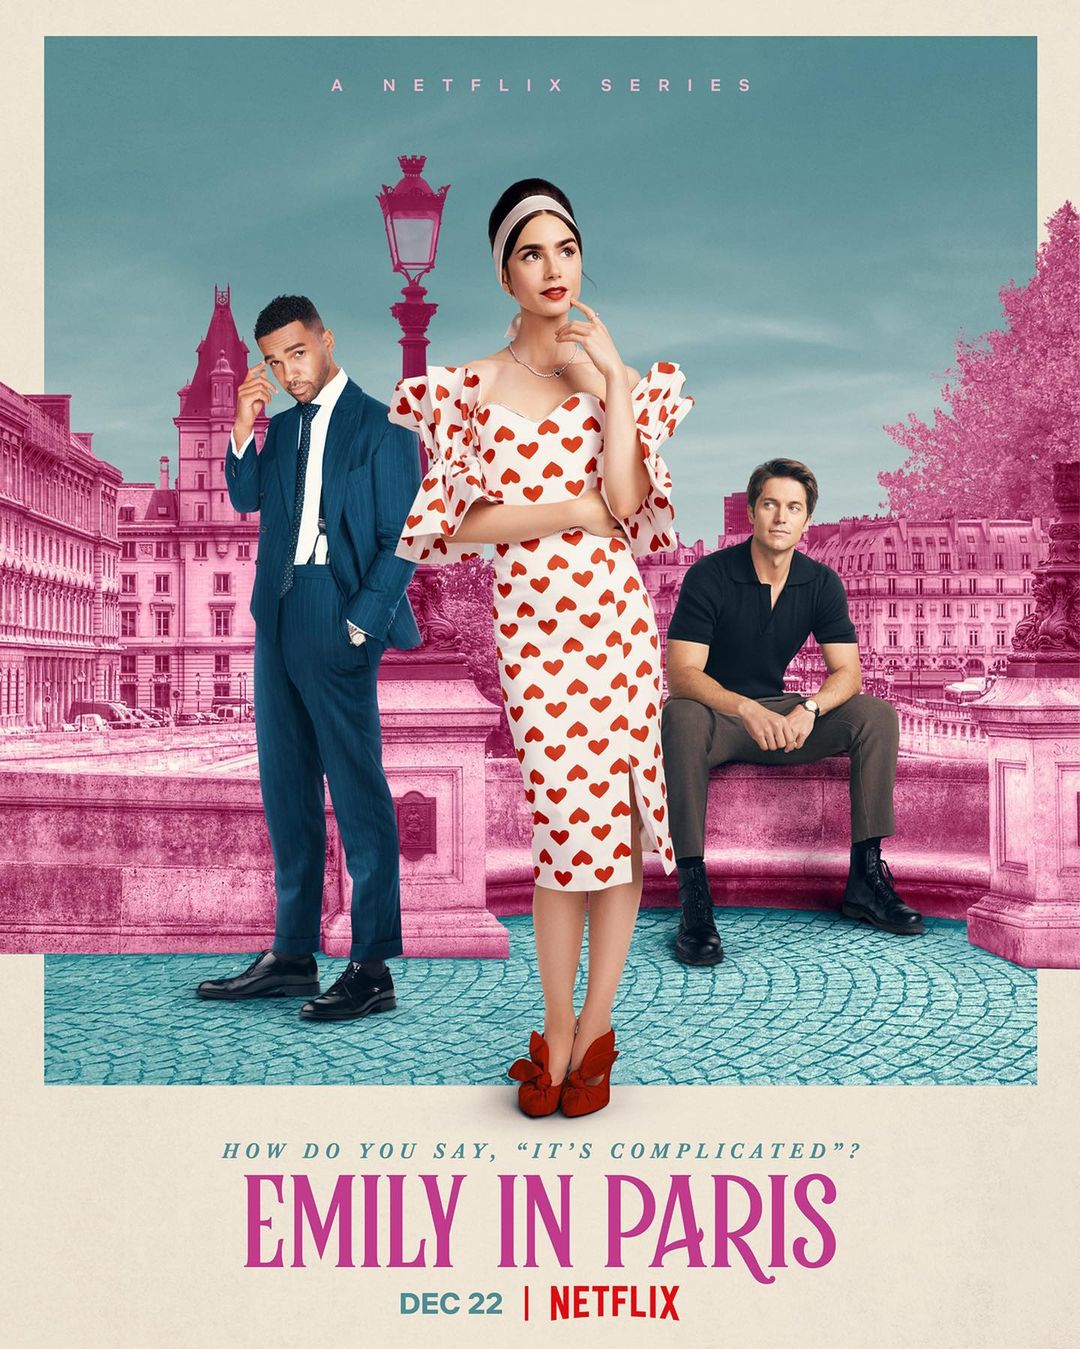 Emily in Paris 2: Lily Collins parla del suo personaggio e del suo ruolo di produttrice esecutiva della serie